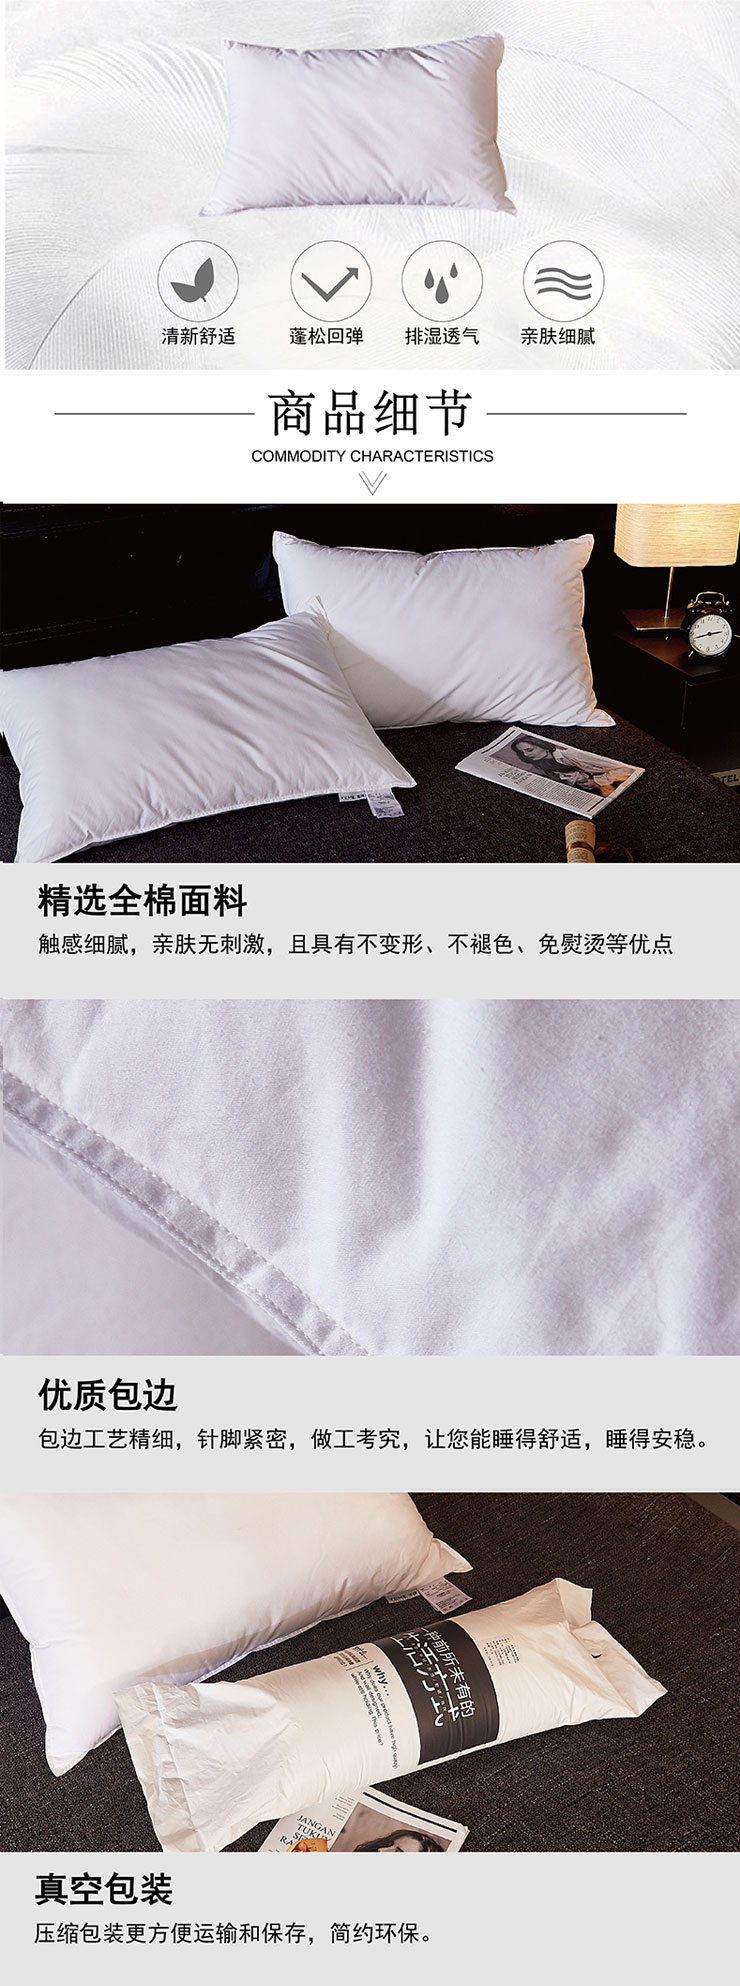 枕头,什么枕头好,枕头品牌,芳恩家纺